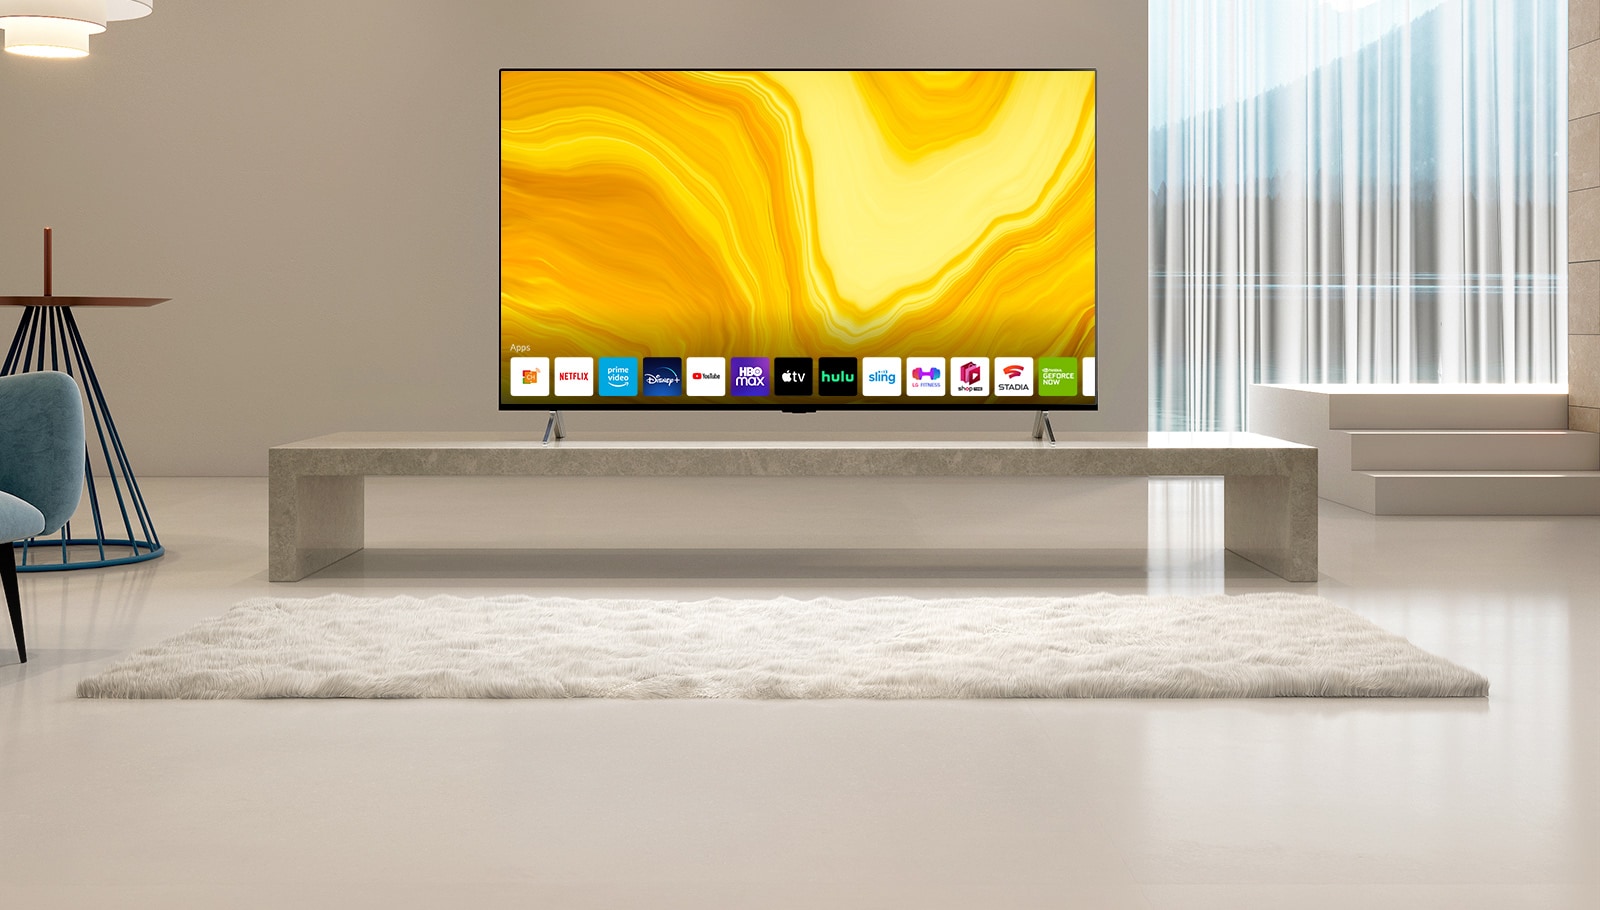 Er verschijnt een lijst van grafische UI's van LG QNED home screen naar beneden scrollend. De scène verandert en de TV staat in de gele woonkamer.